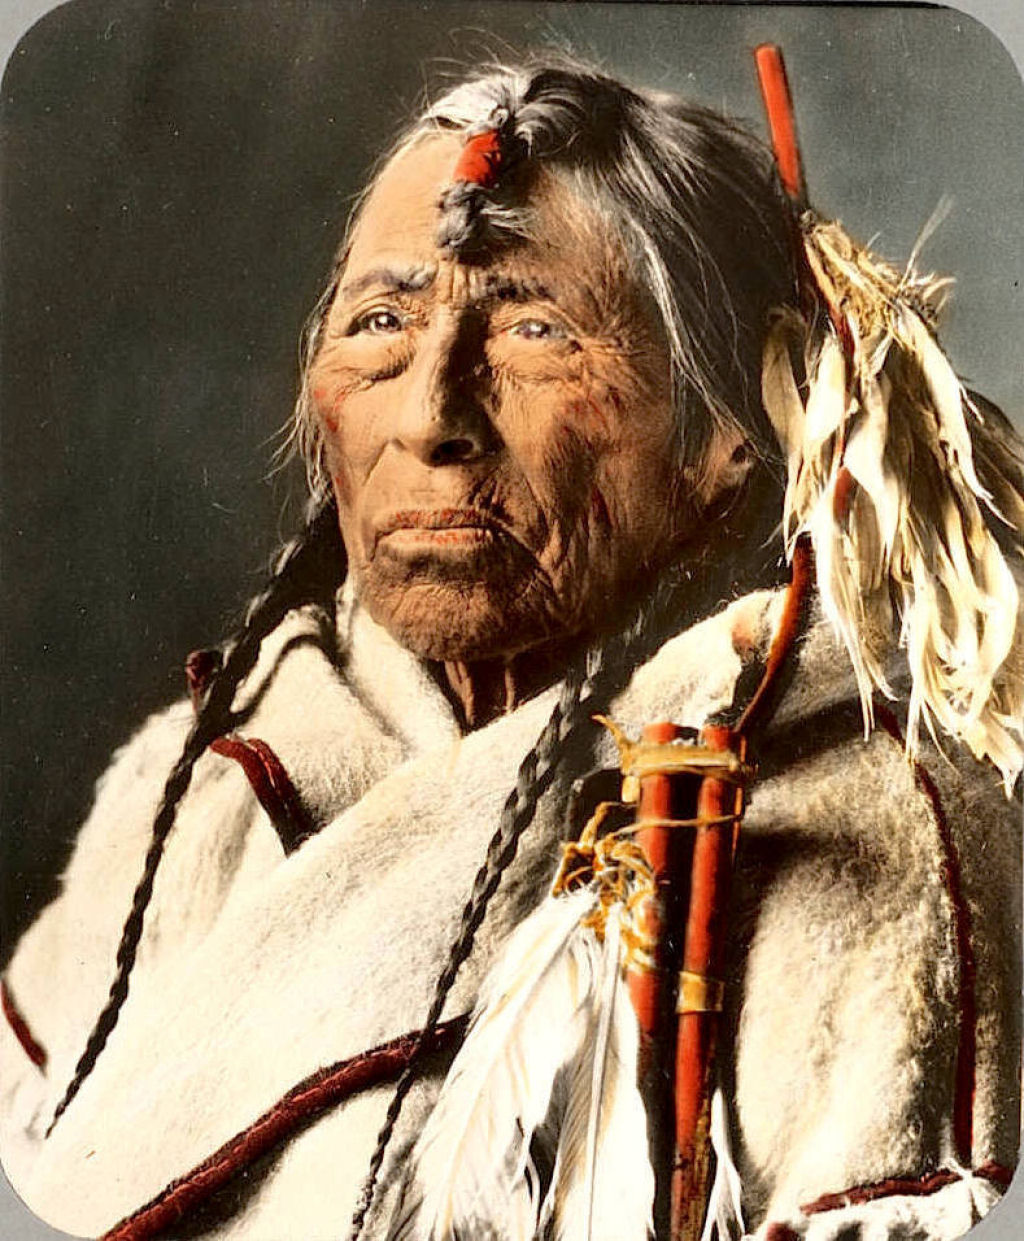 Impressionantes fotos históricas coloridas de nativos americanos do final do século 19 e início do século 20 19